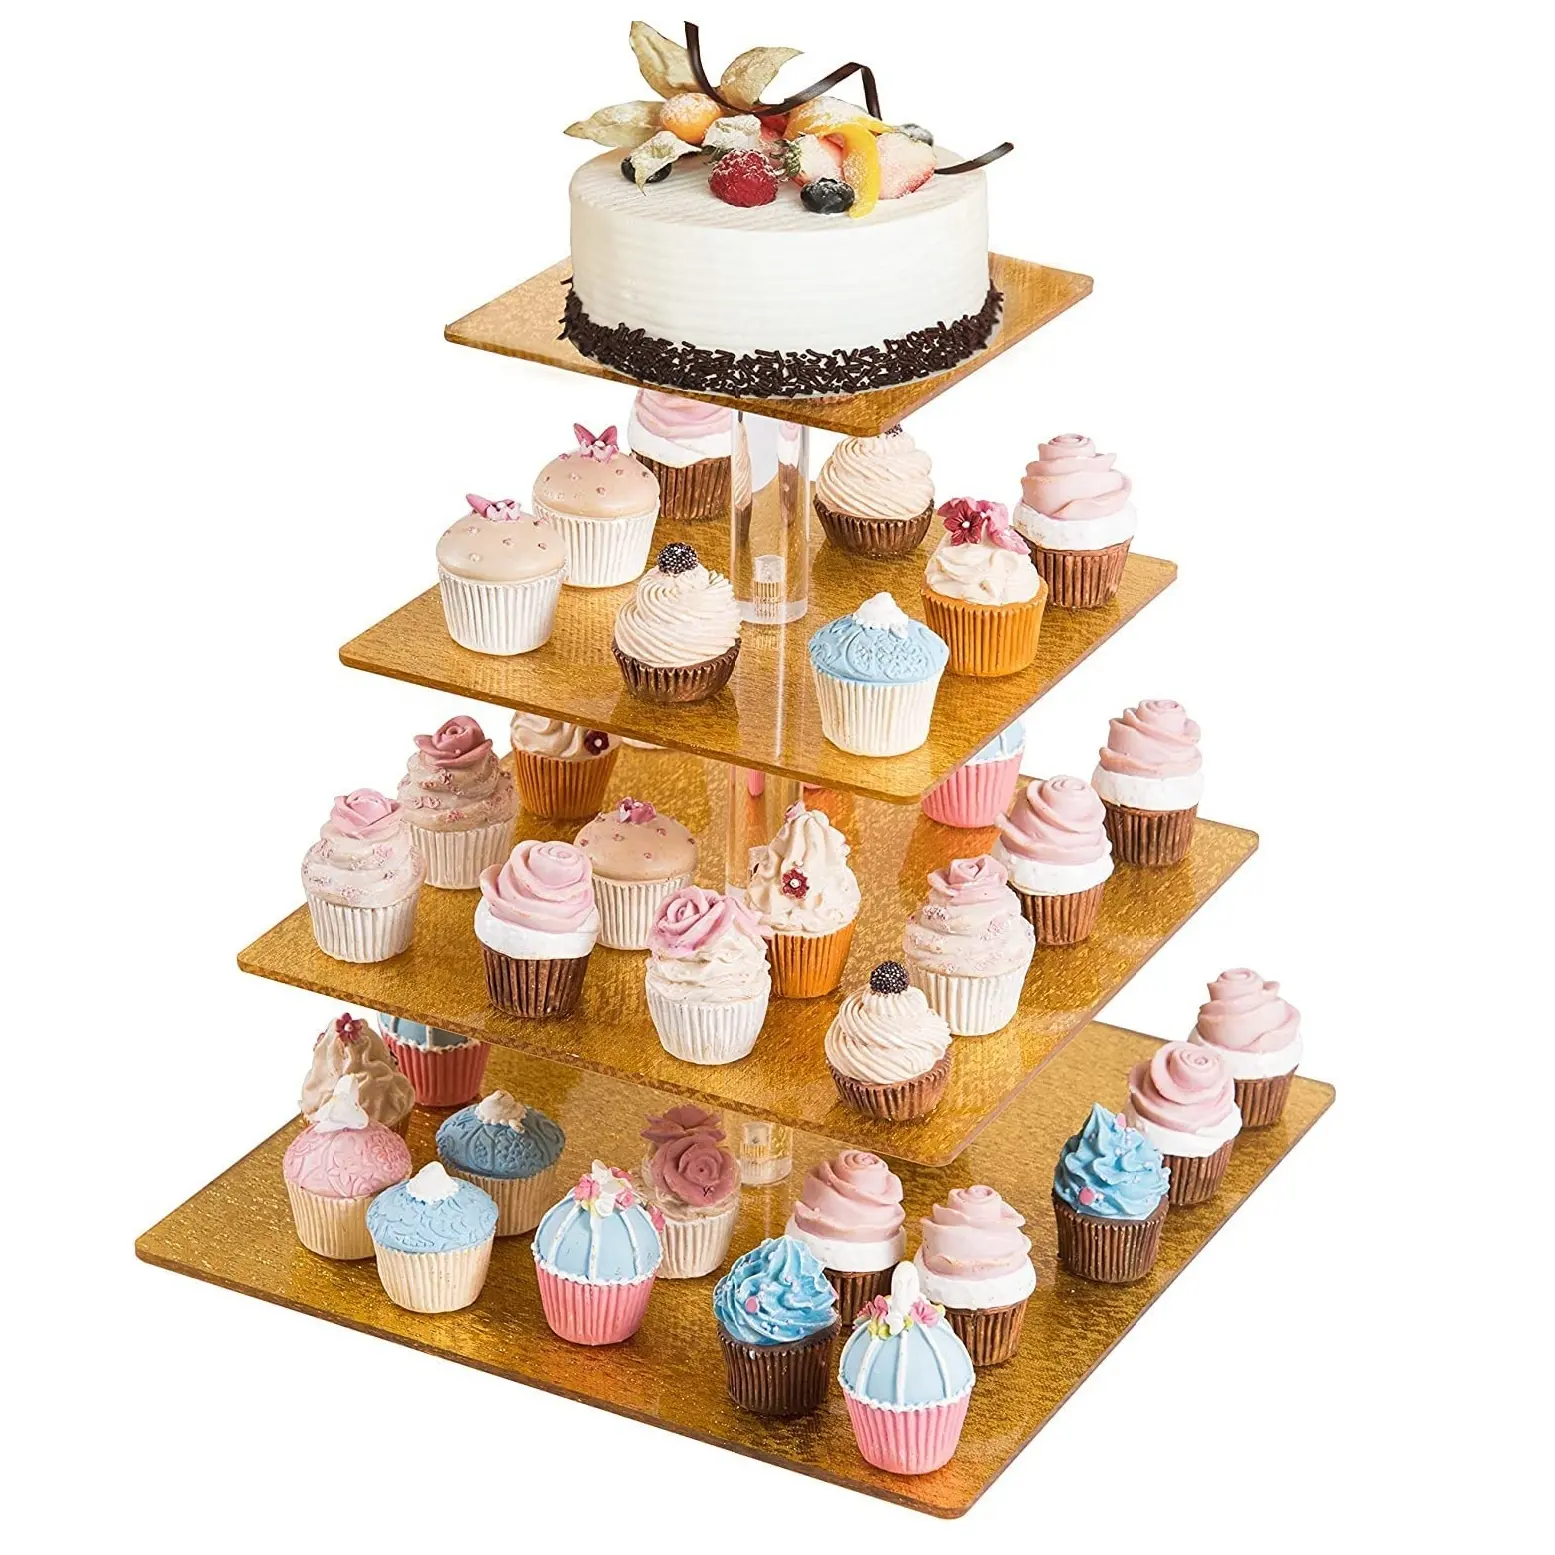 Strukturierter Cupcake aus Acryl, der Tower Dessert und Gebäck mit Glitter Golden Four Tier Cake Stand zeigt